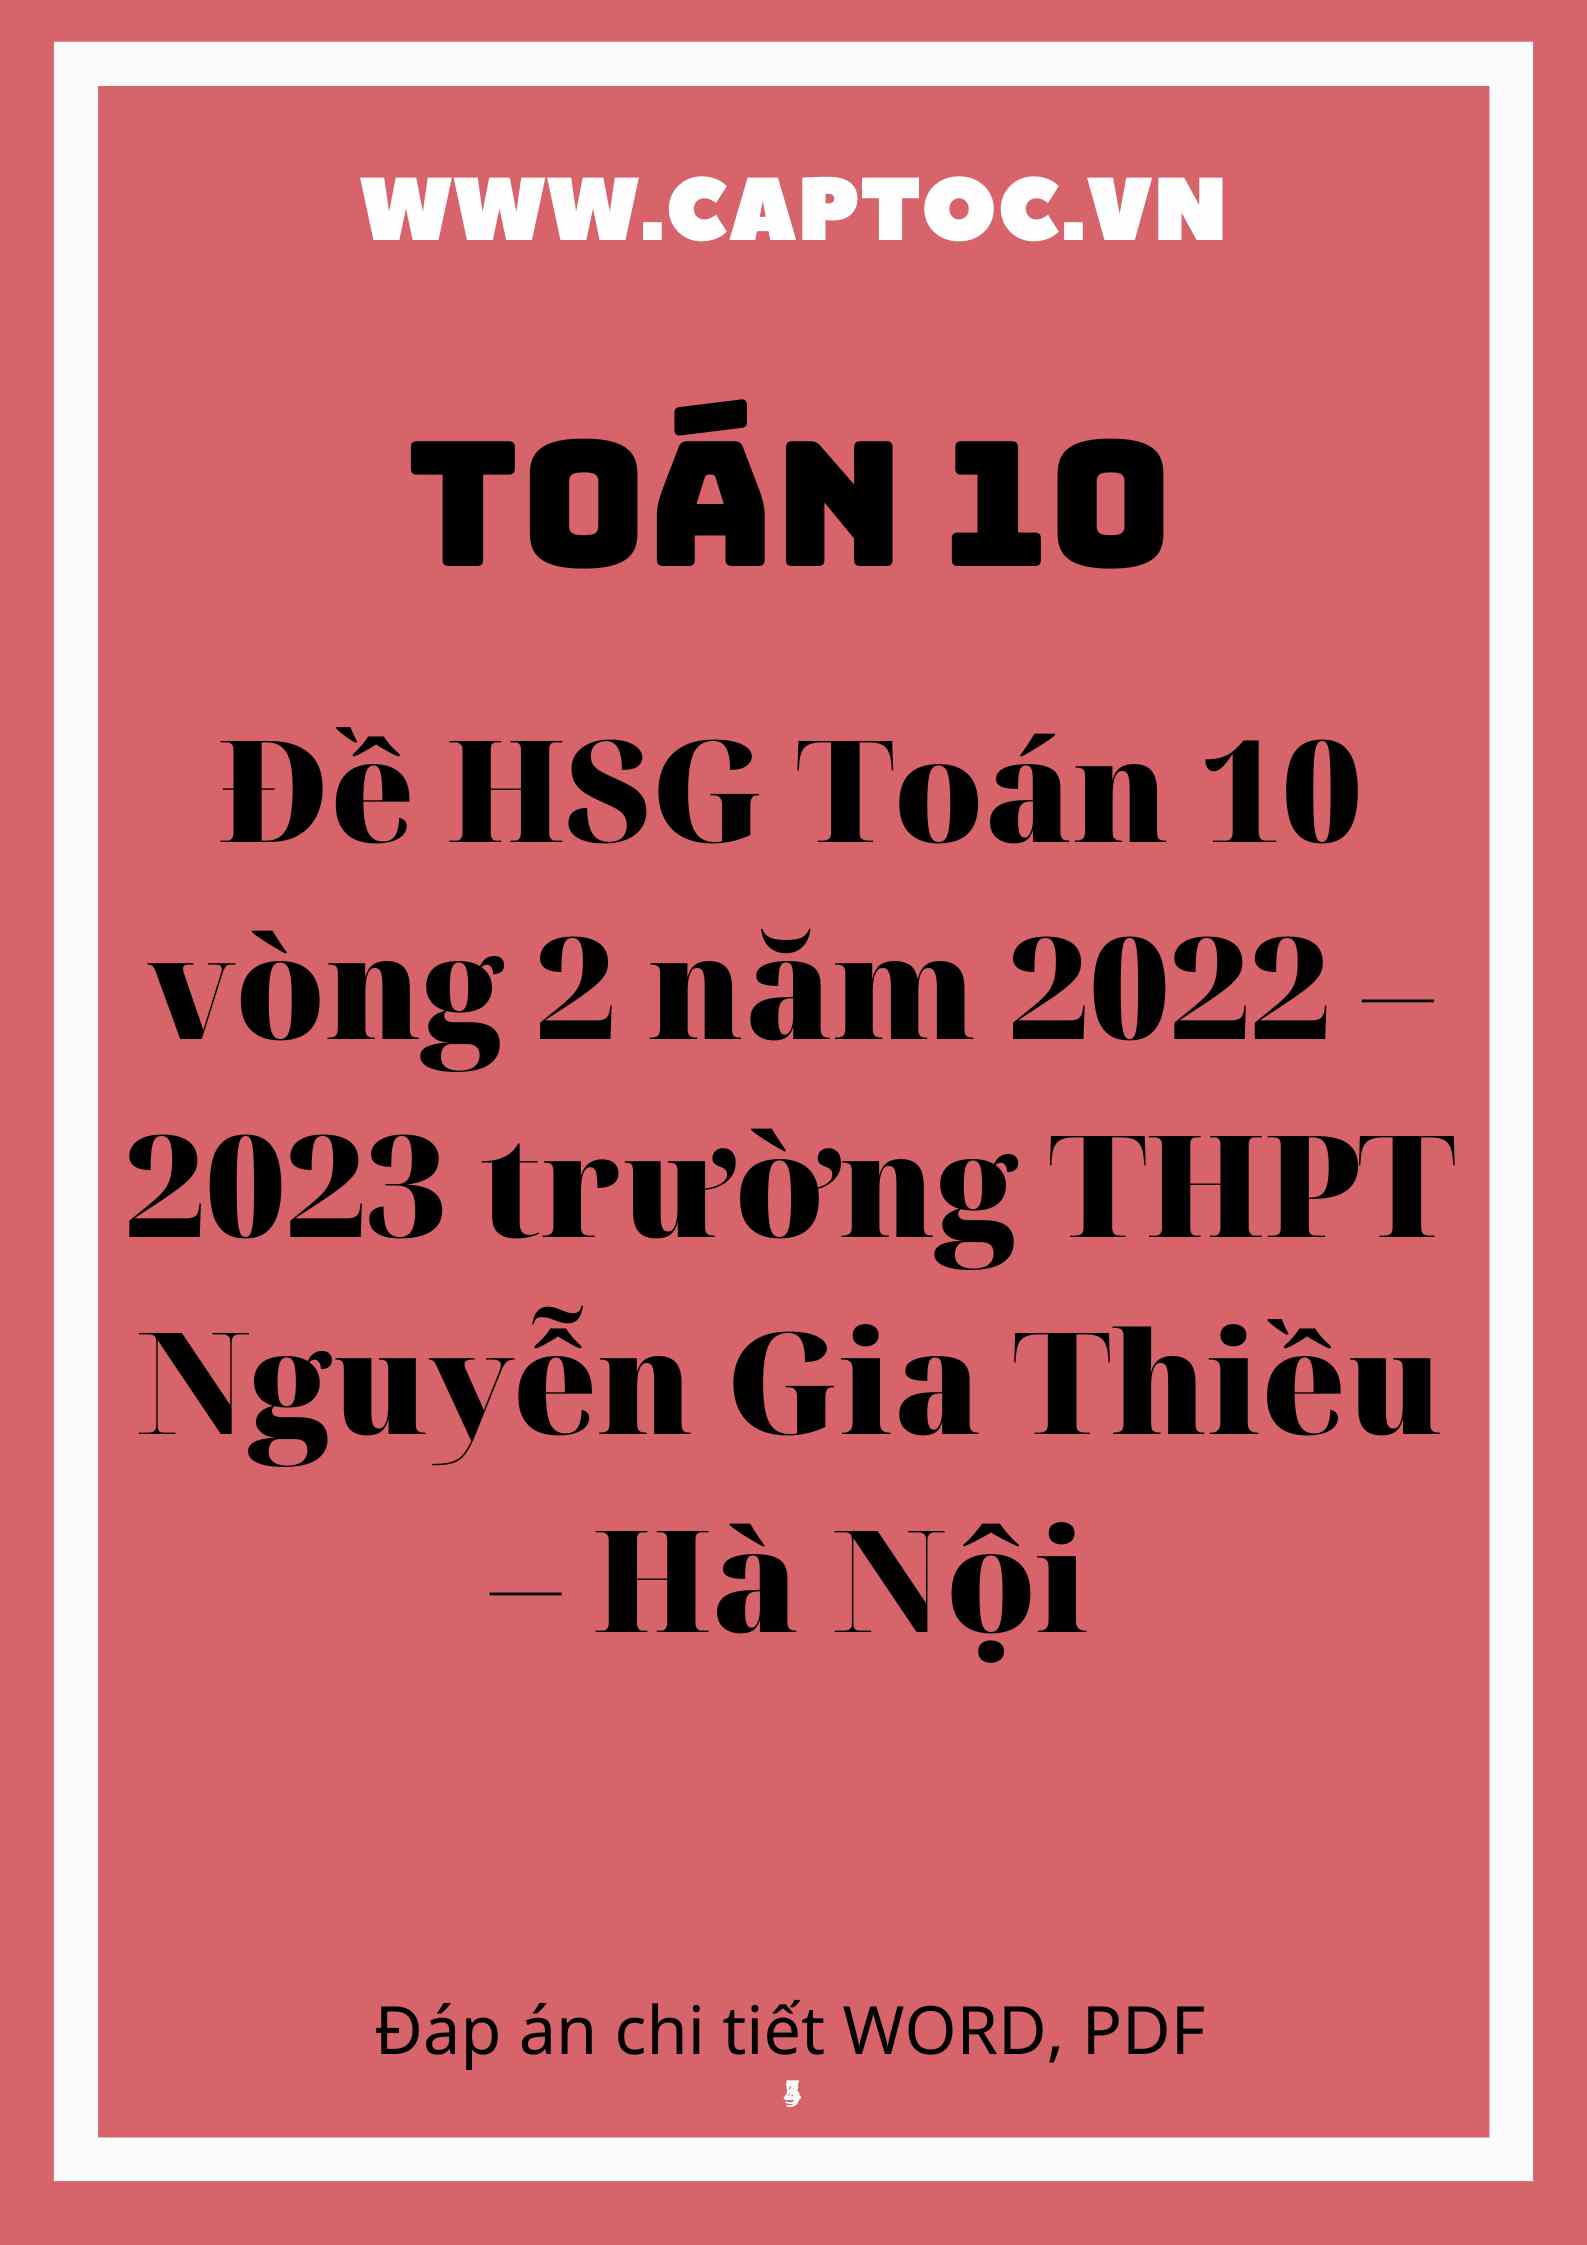 Đề HSG Toán 10 vòng 2 năm 2022 – 2023 trường THPT Nguyễn Gia Thiều – Hà Nội